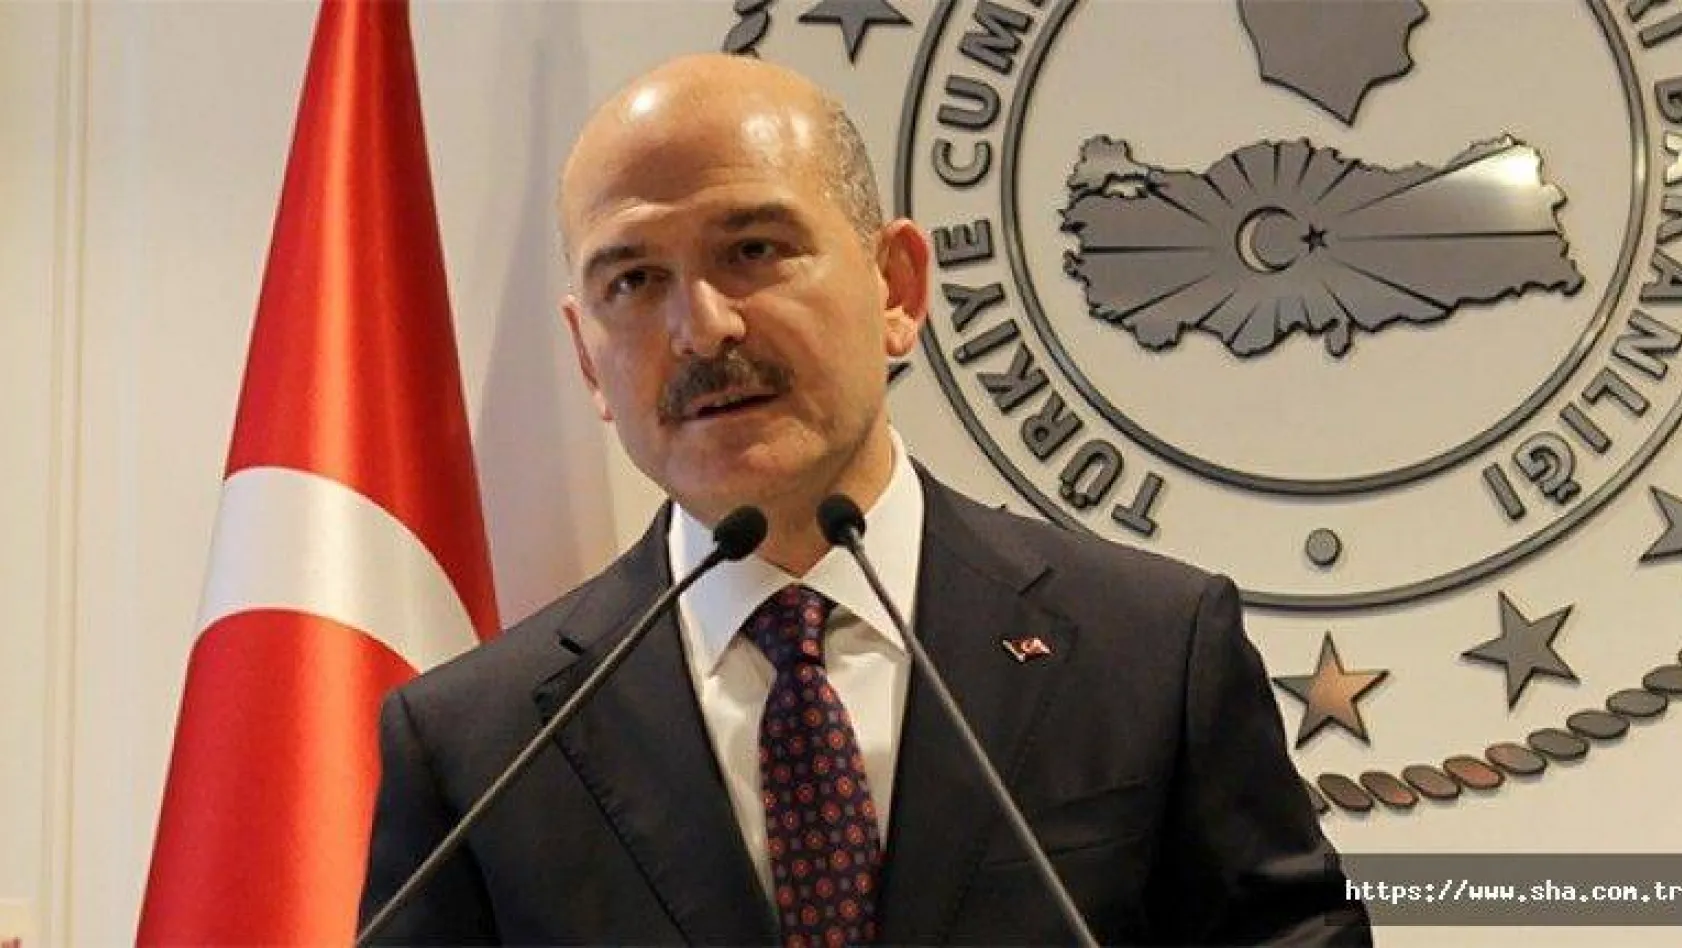 İçişleri Bakanı Süleyman Soylu'dan İstanbul ve Ankara için kayyum açıklaması!